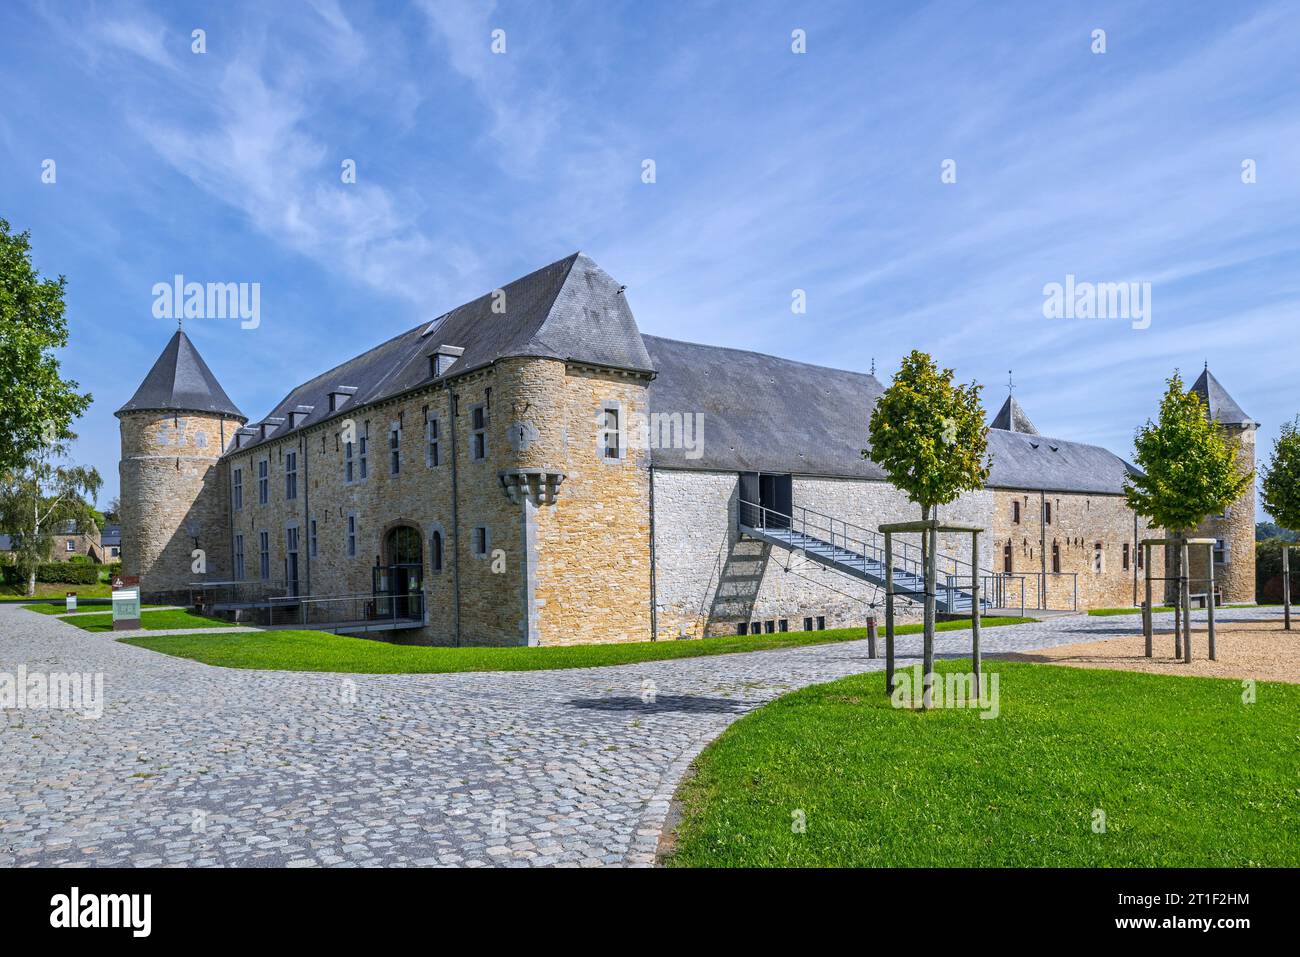 Château-ferme de Courrière, 17th century fortified castle farm at Courrière near Assesse, province of Namur, Belgian Ardennes, Wallonia, Belgium Stock Photo